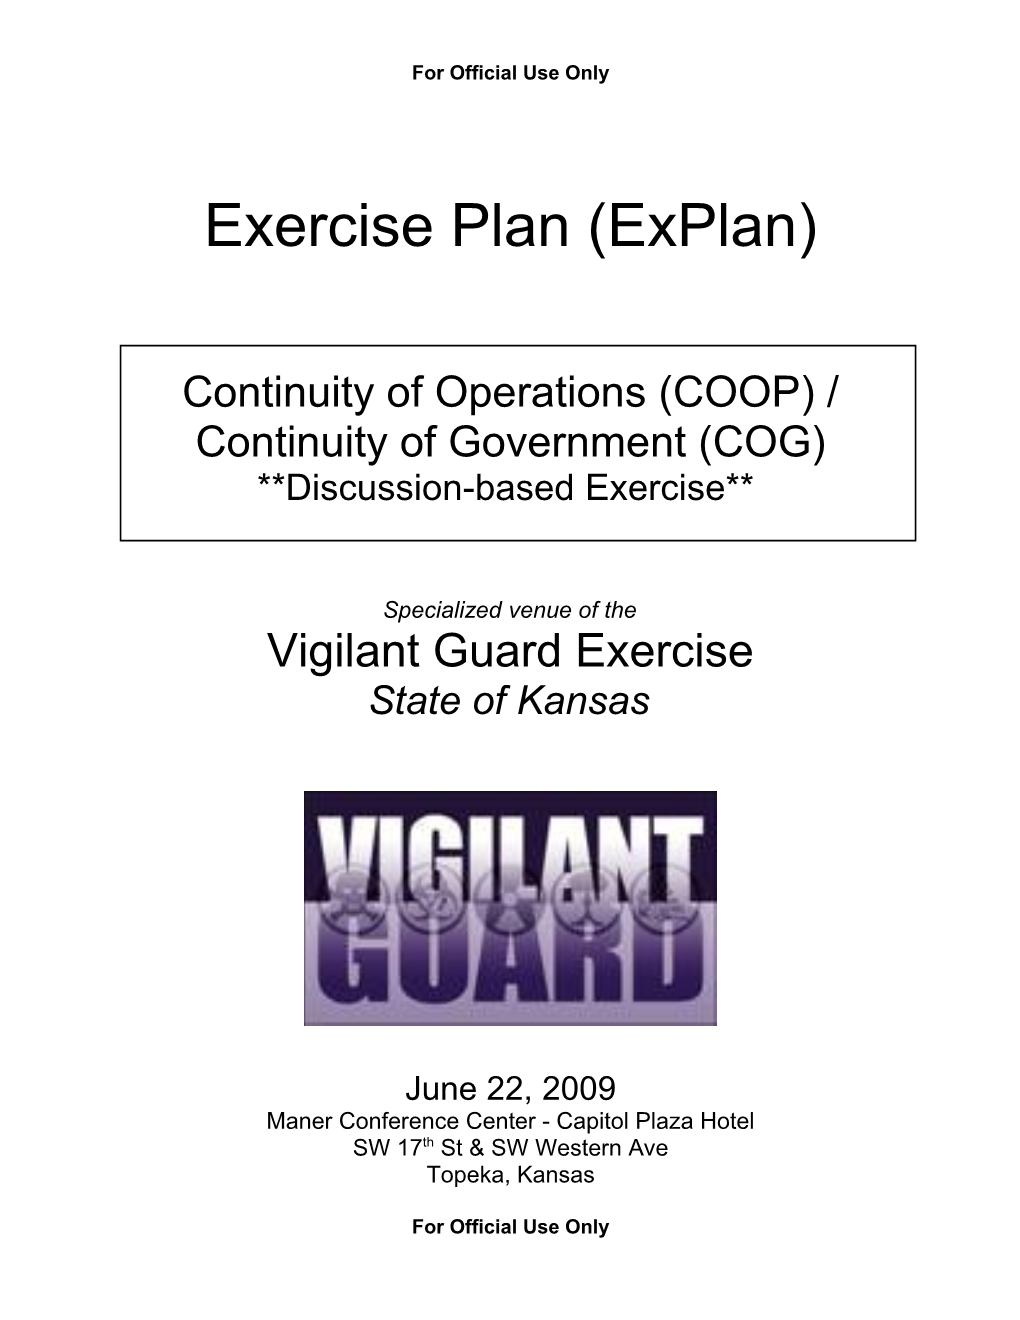 Exercise Plan (Explan)